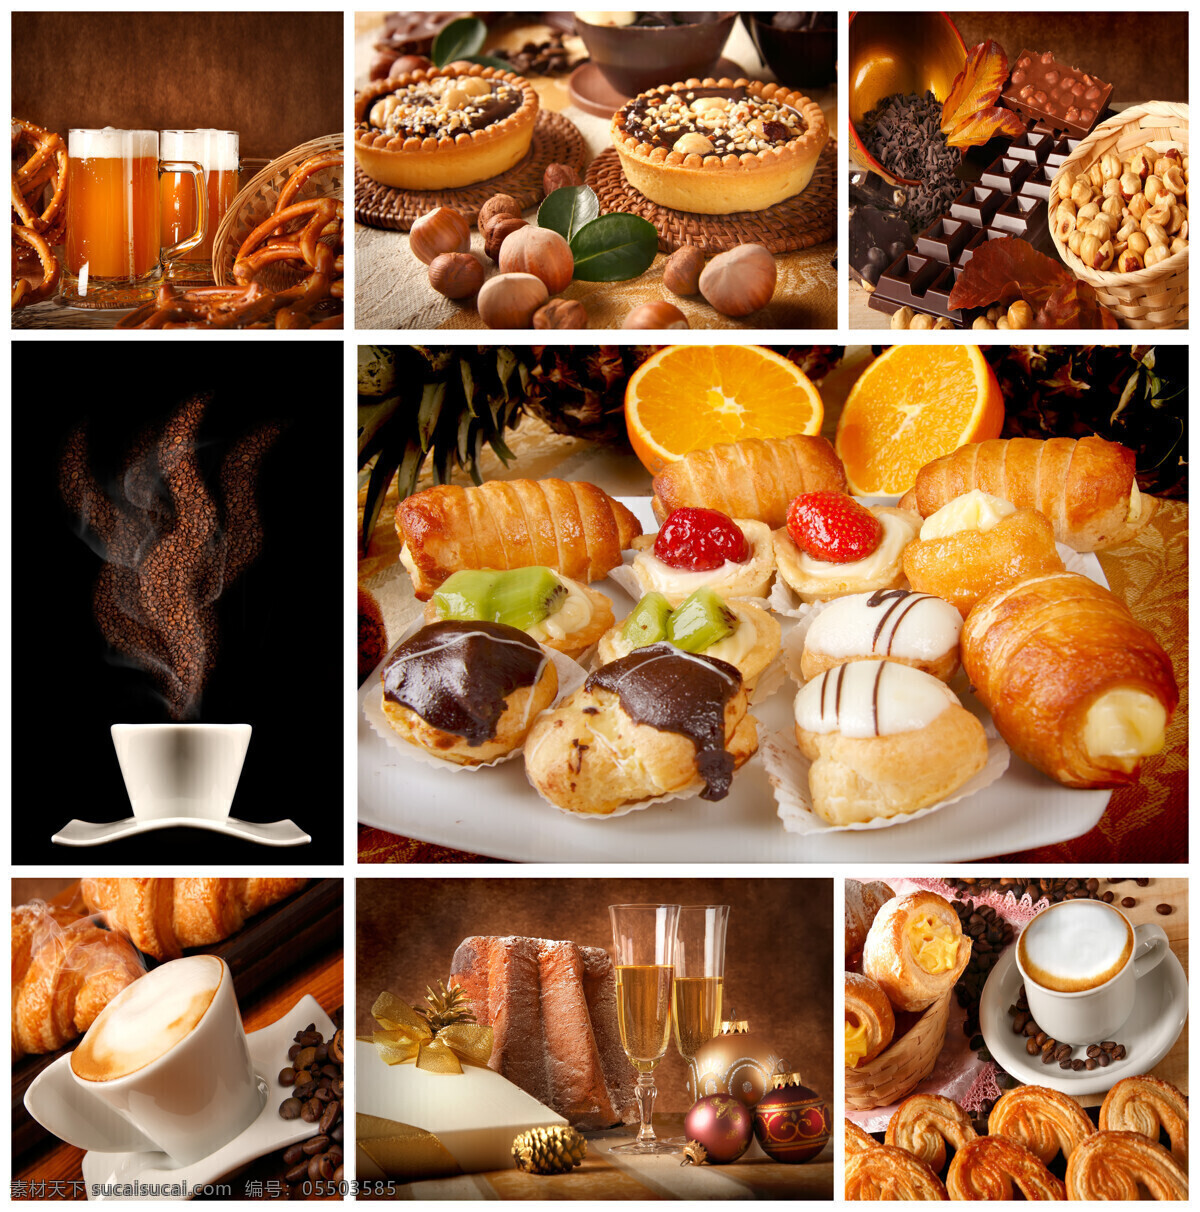 各种 形状 面包 咖啡 甜品 食物 美食 食物食材 美食图片 餐饮美食